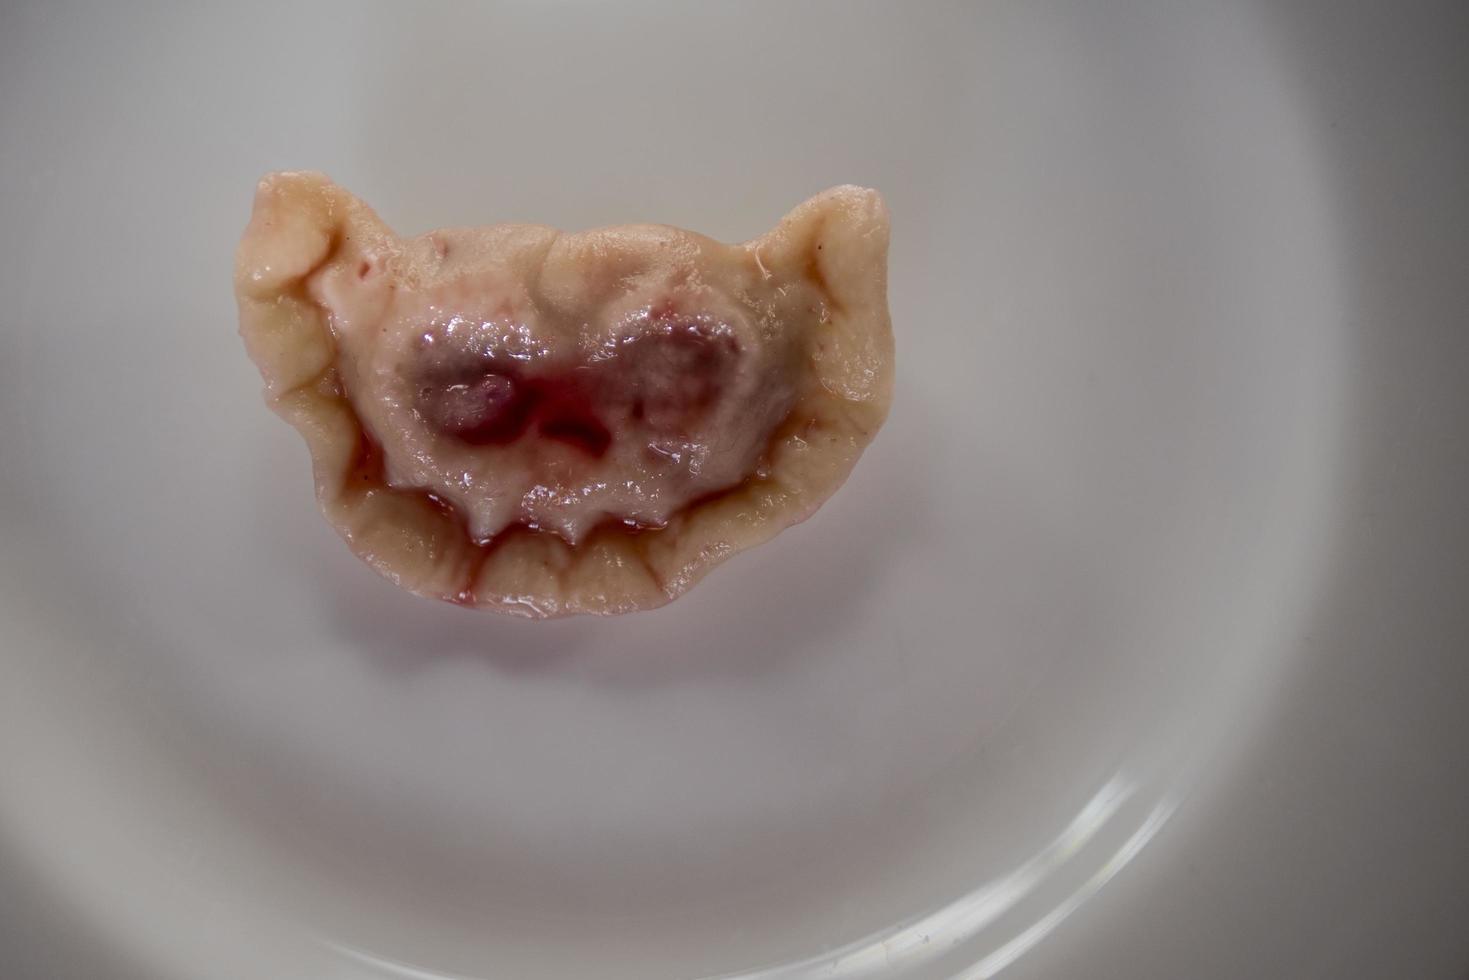 bolinhos com cerejas na forma de um terrível focinho vampiro drácula foto